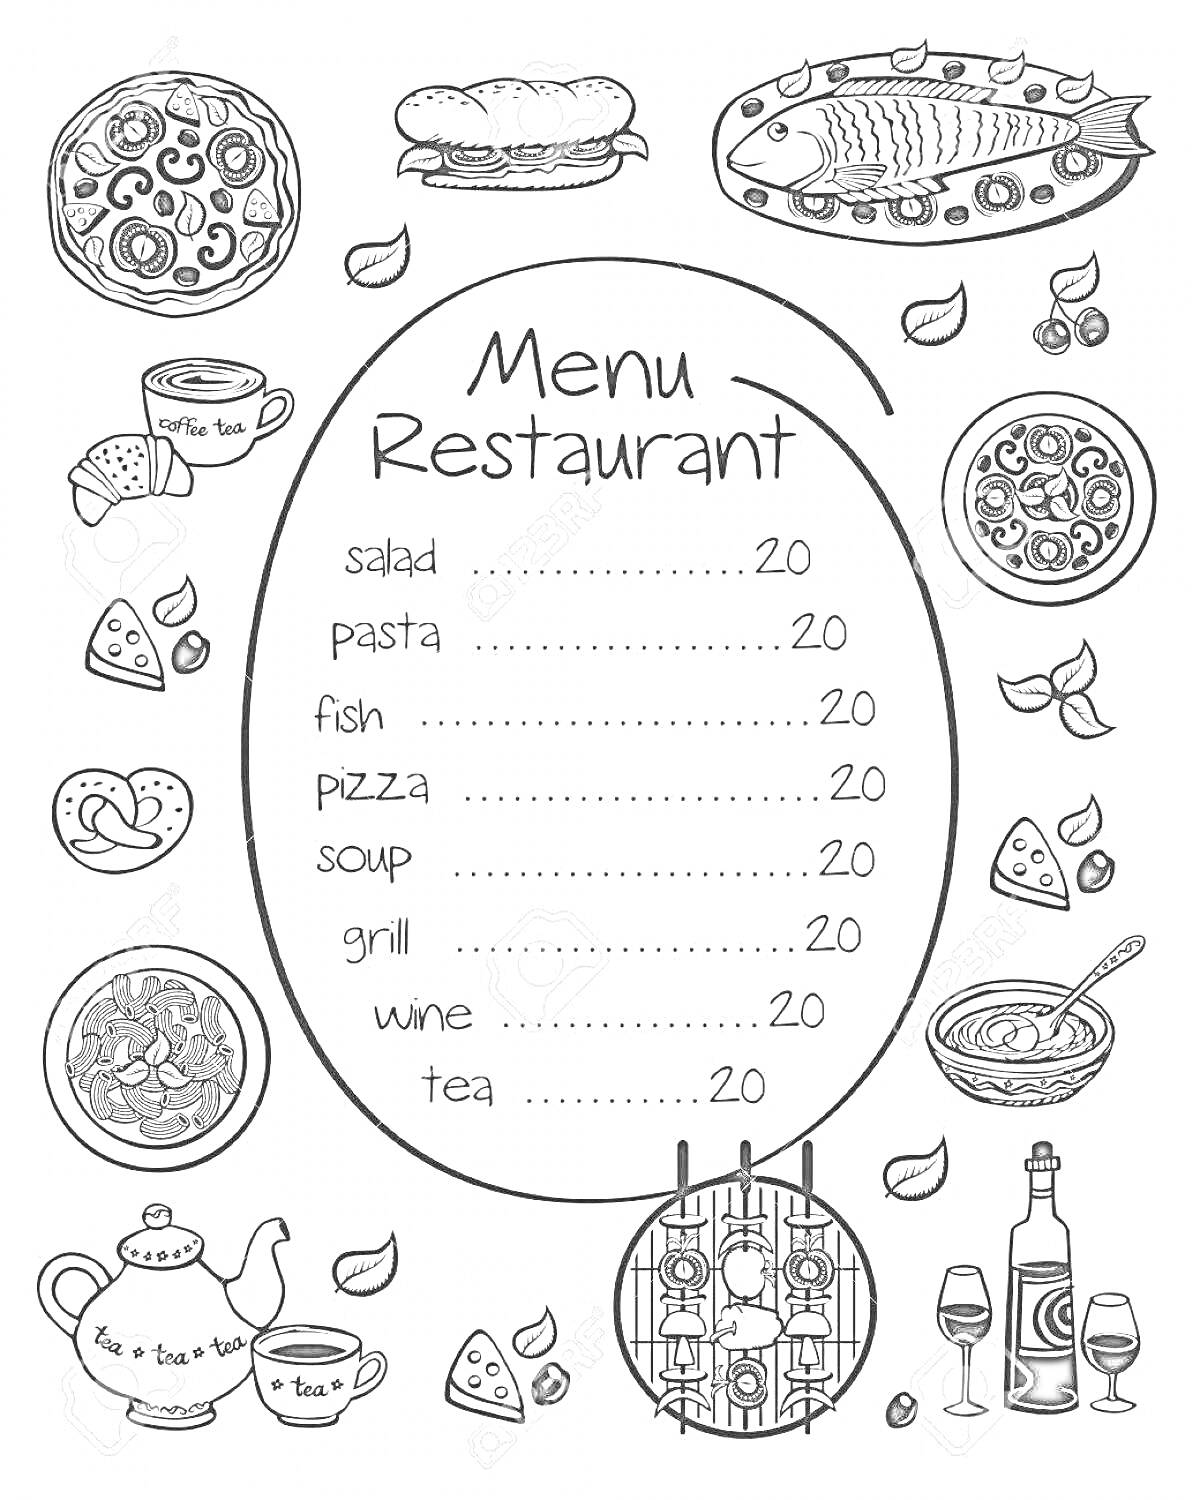 Раскраска Меню ресторана с рисунками салата, пасты, рыбы, пиццы, супа, гриля, вина, чая, чайника, кружки, тарелки, вилки, бокала, бутылок, сыра, хлеба, лимона и листьев